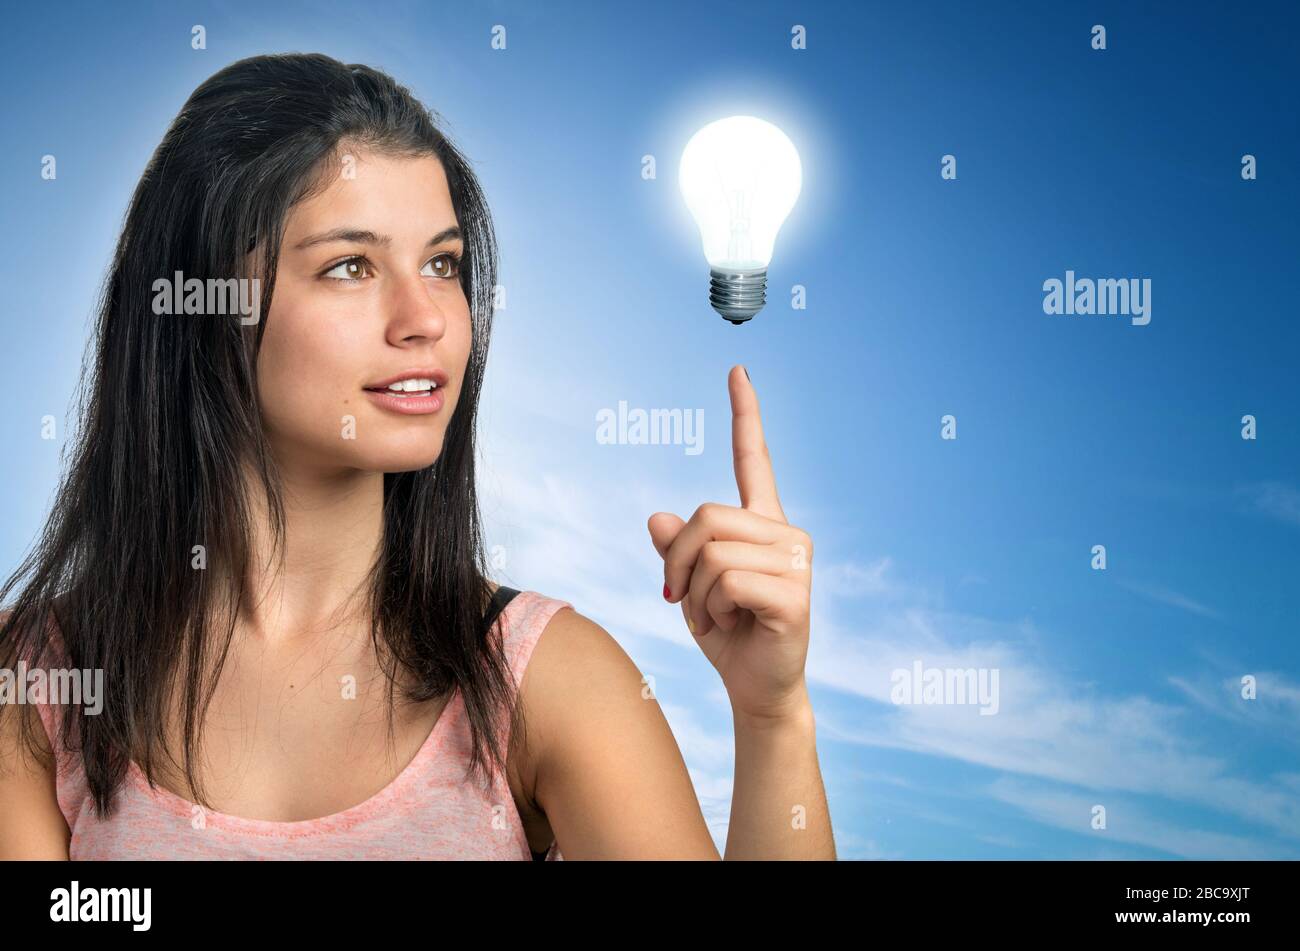 Teenager brunette girl pointing her finger to a light bulb Stock Photo